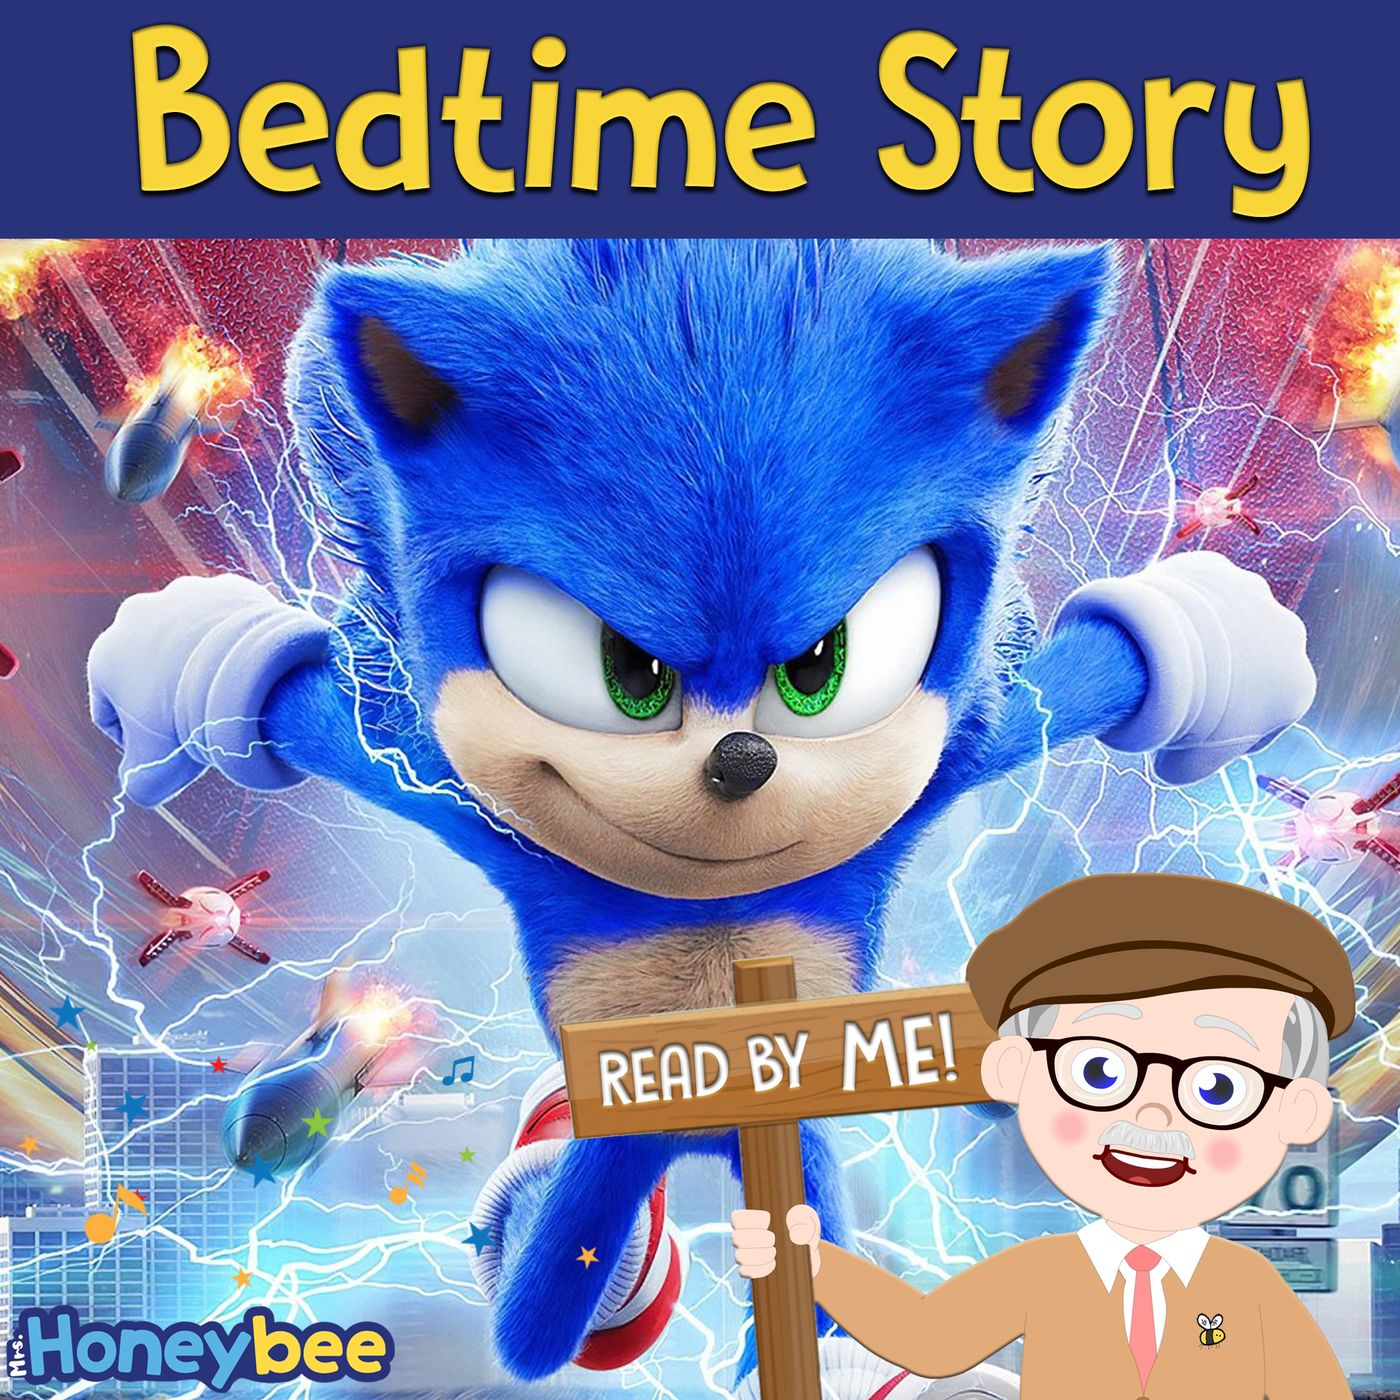 Sonic - Bedtime Story (Mr. Honeybee)